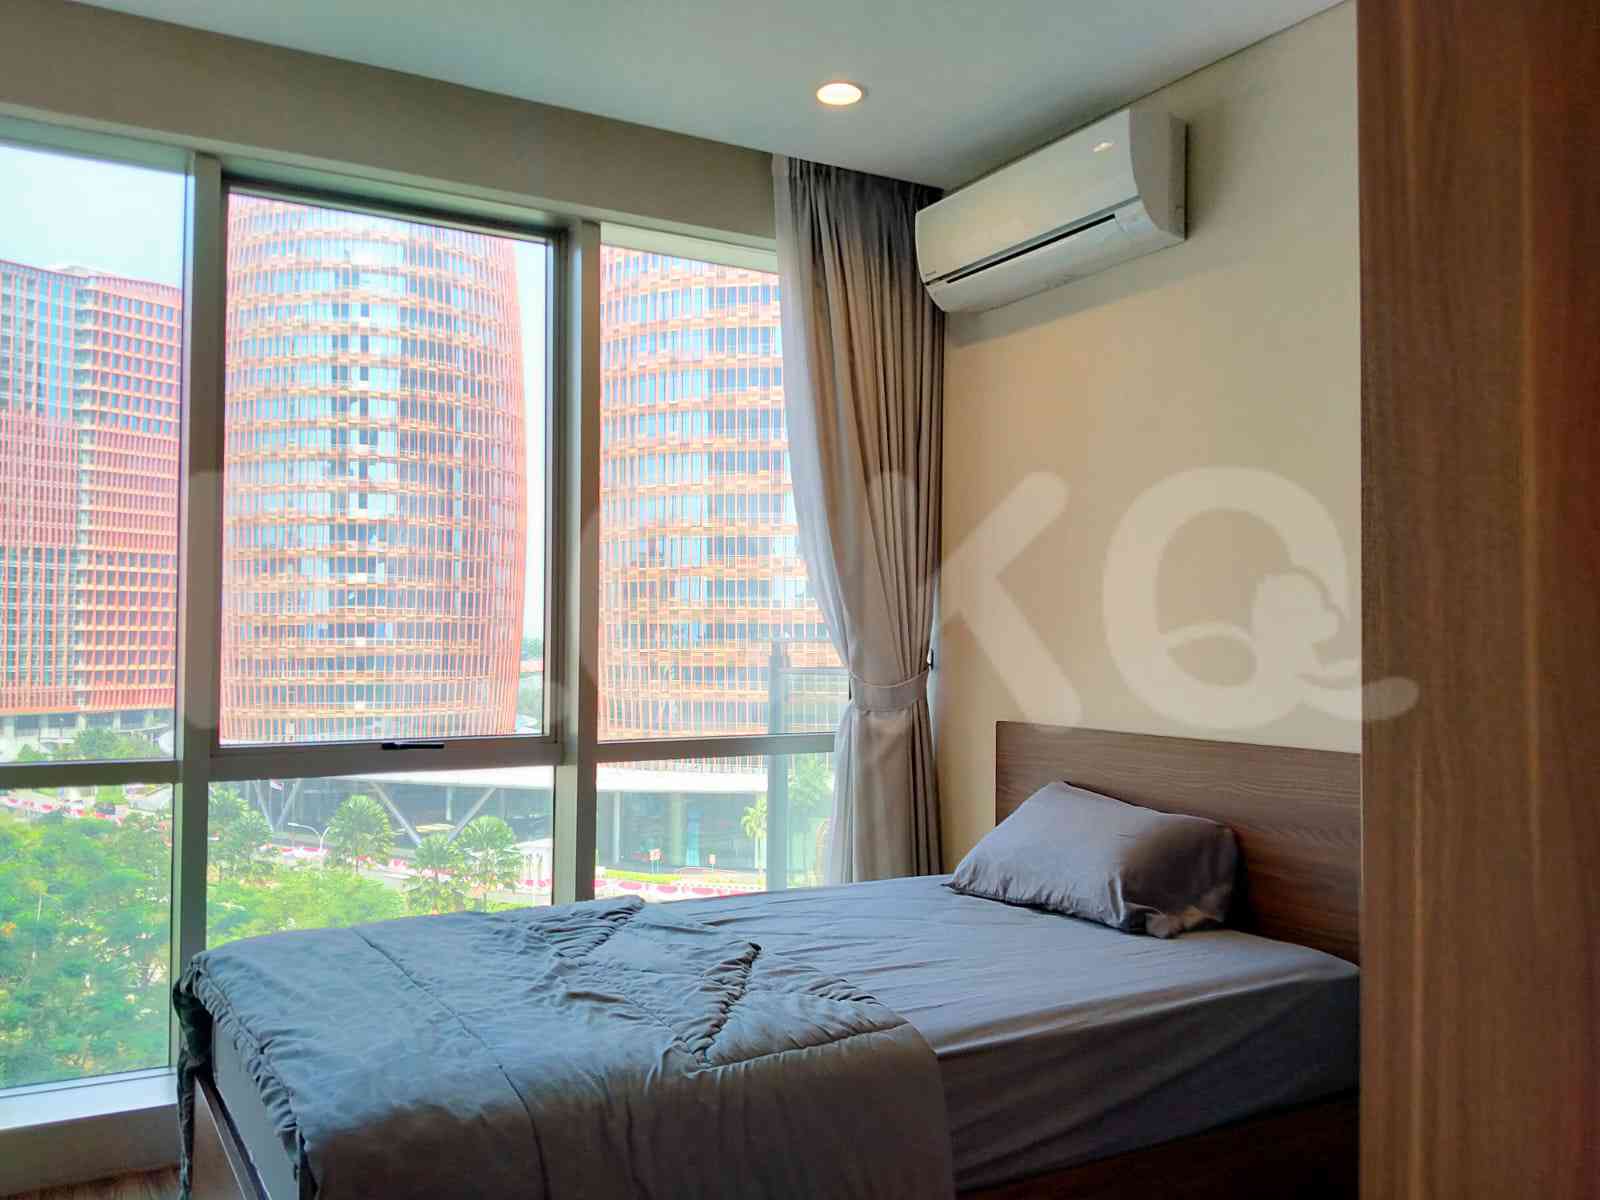 2 Bedroom on 5th Floor for Rent in Apartemen Branz Simatupang - ftb4d0 3